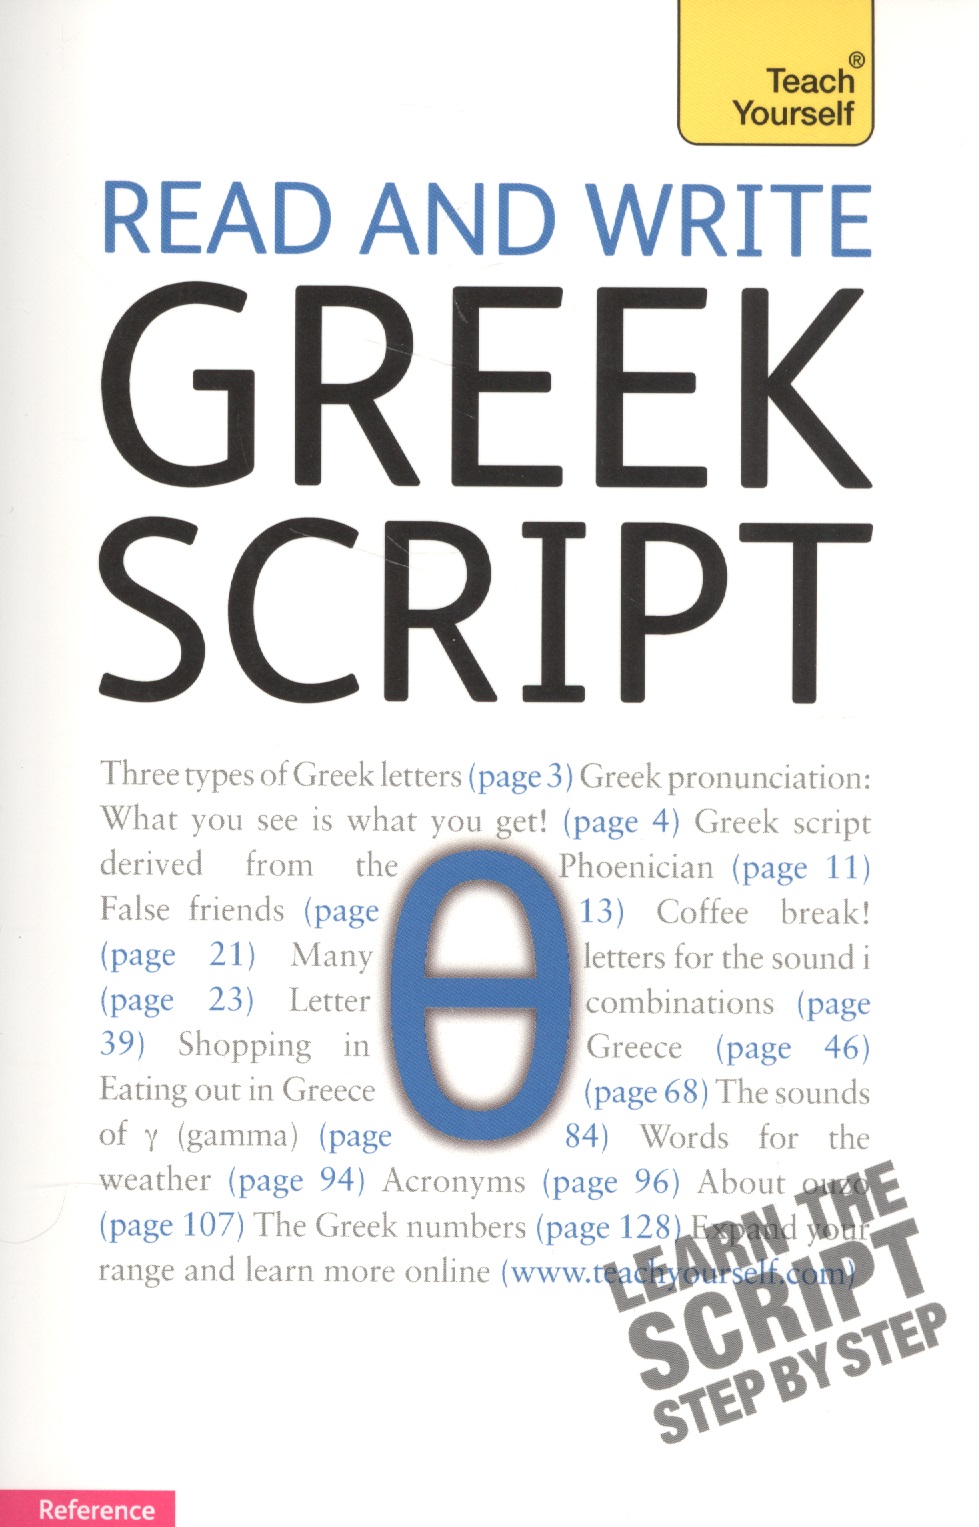 None Read and write greek script